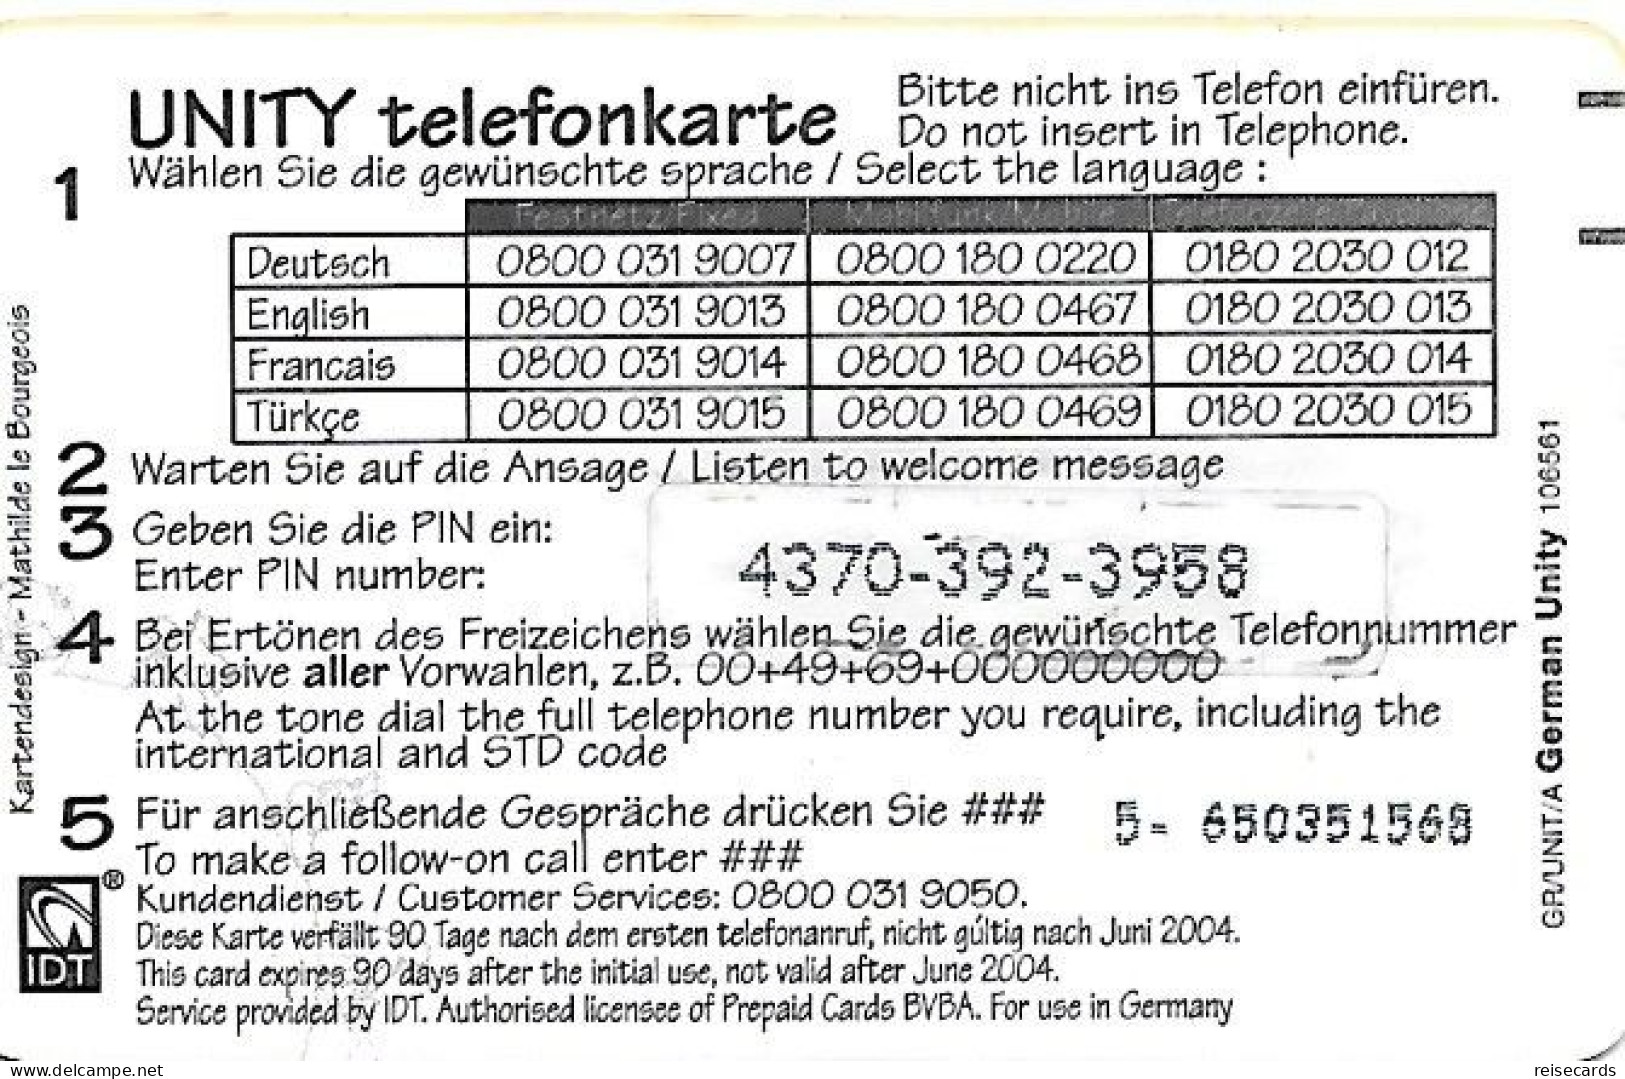 Germany: Prepaid IDT Unity 06.04 - Cellulari, Carte Prepagate E Ricariche